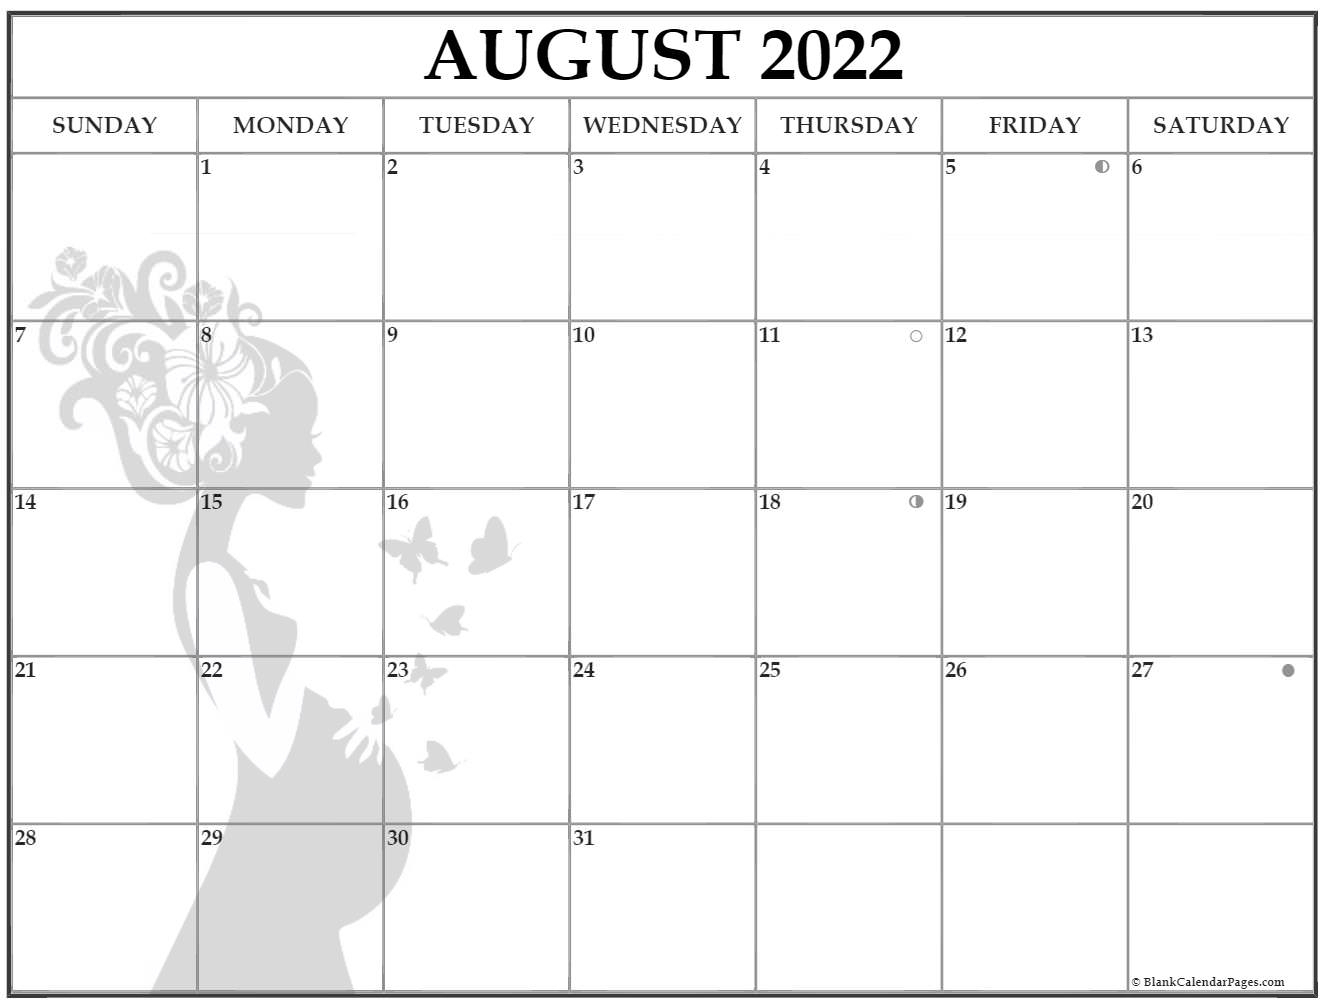 August 2022 Pregnancy Calendar | Fertility Calendar